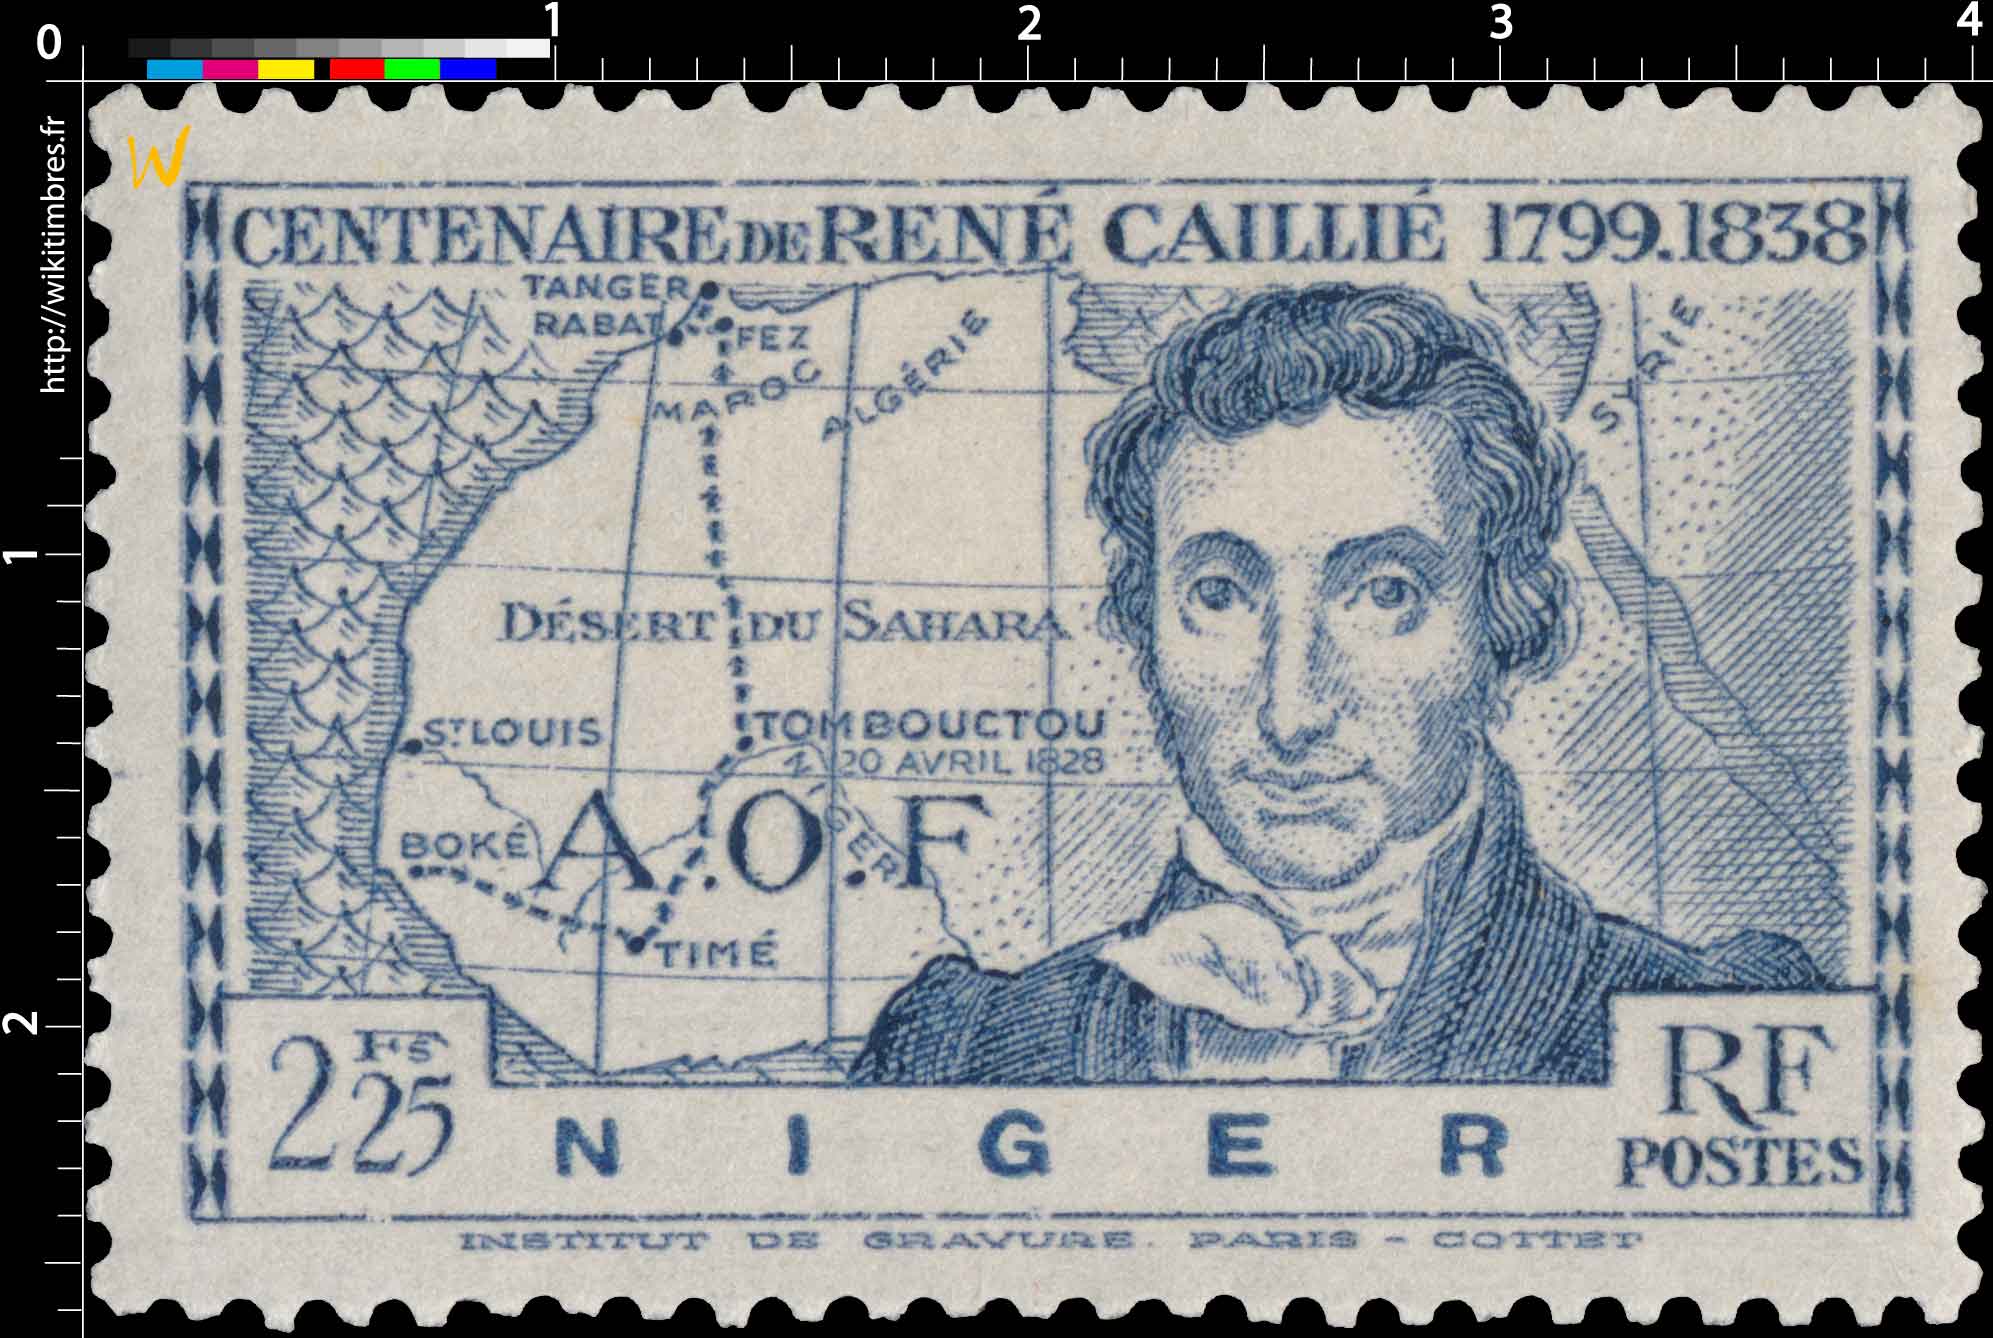 AOF Niger centenaire de René Caillié 1799 - 1838